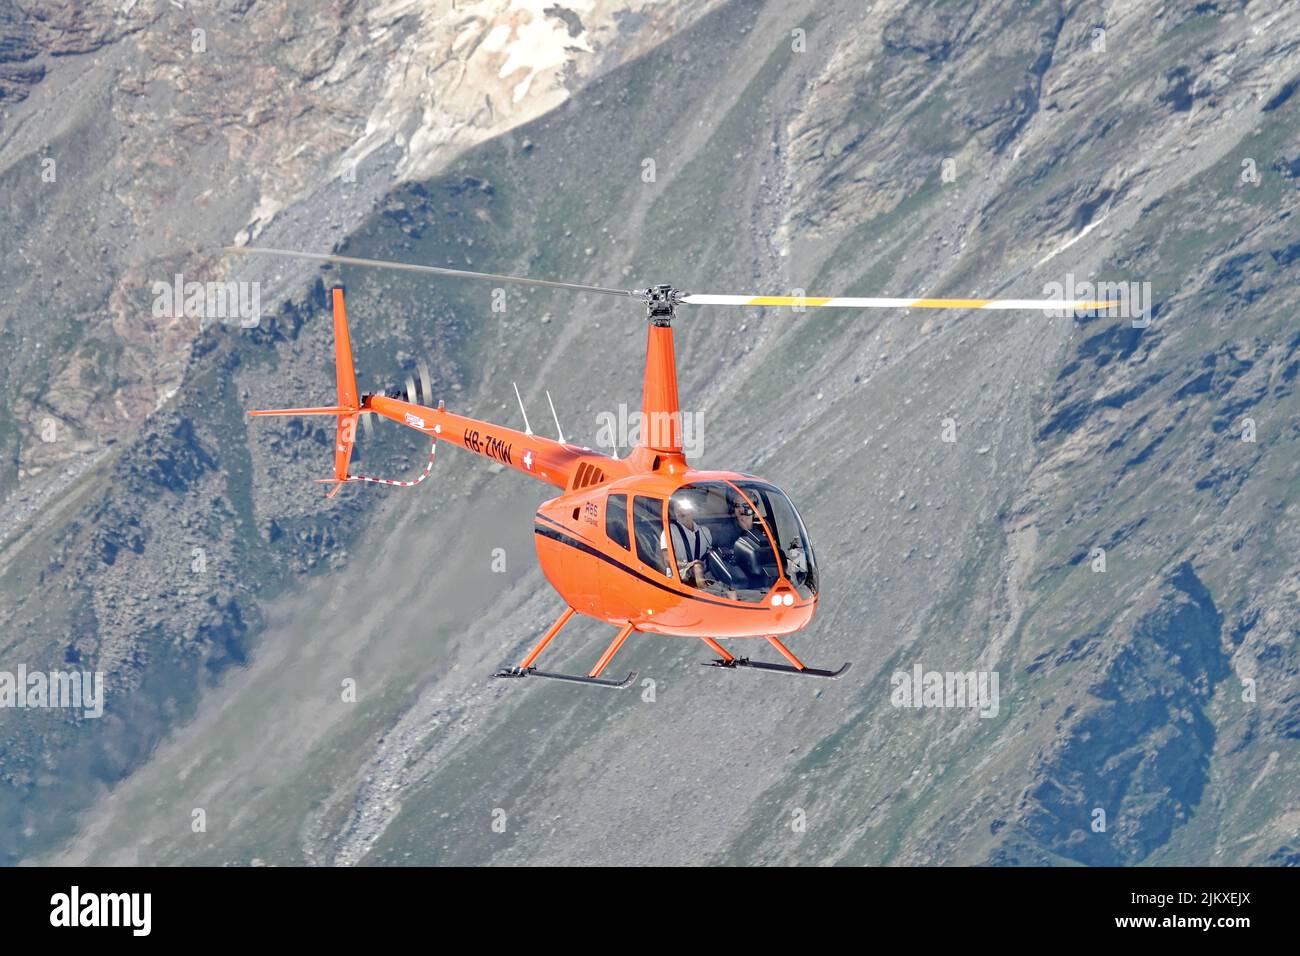 Vol en hélicoptère dans les Alpes suisses. Zermatt, Suisse - août 2022 Banque D'Images